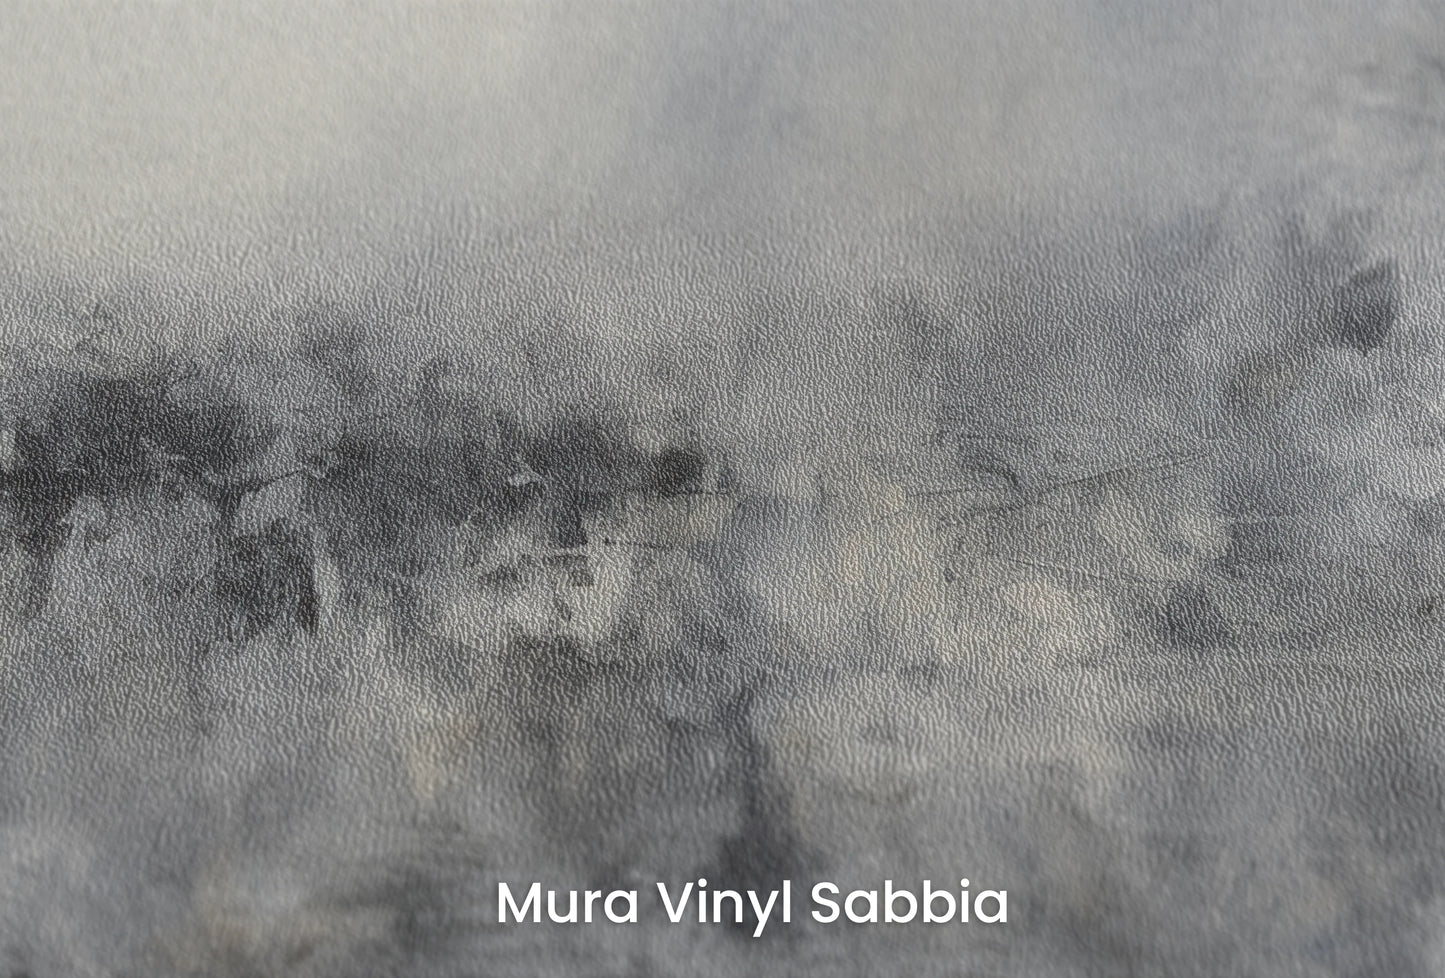 Zbliżenie na artystyczną fototapetę o nazwie Monochrome Mystery na podłożu Mura Vinyl Sabbia struktura grubego ziarna piasku.